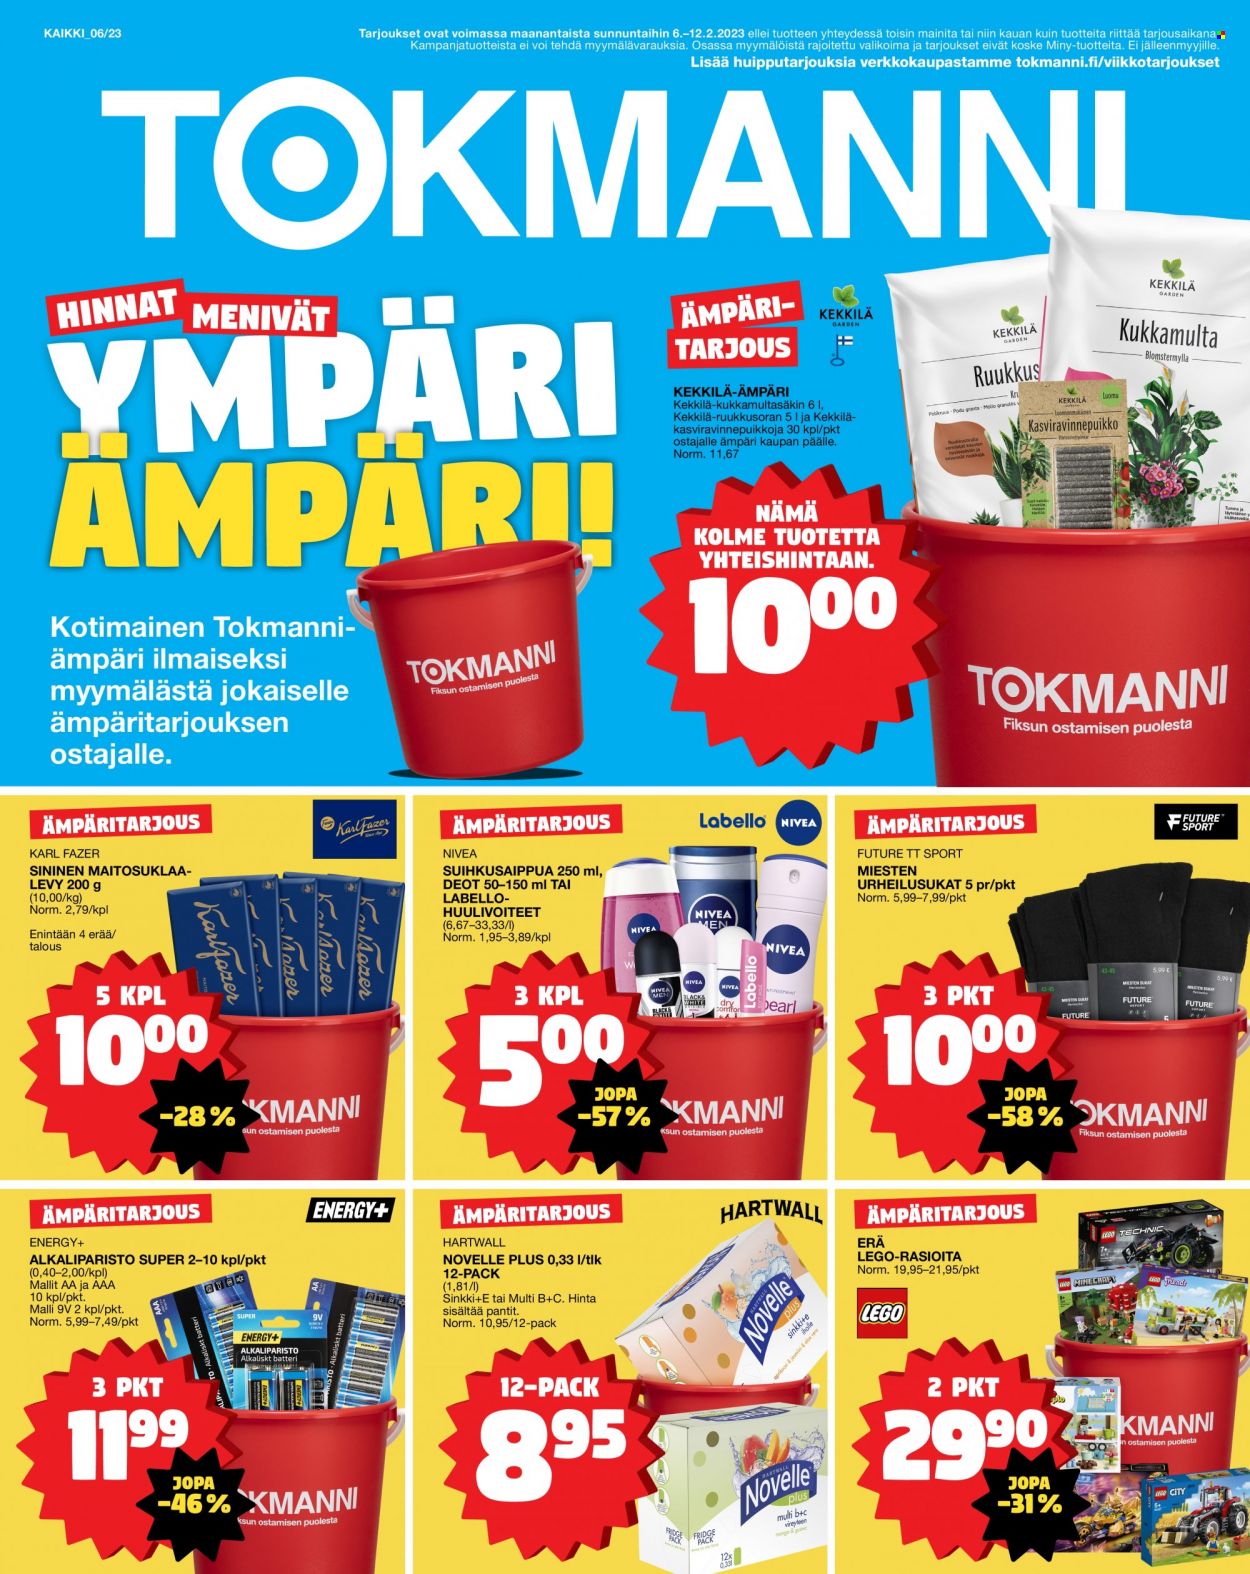 thumbnail - Tokmanni tarjoukset  - 06.02.2023 - 12.02.2023 - Tarjoustuotteet - Nivea, Karl Fazer, maitosuklaalevy, suihkusaippua, Energy+, Future TT Sport, LEGO, tt. Sivu 1.